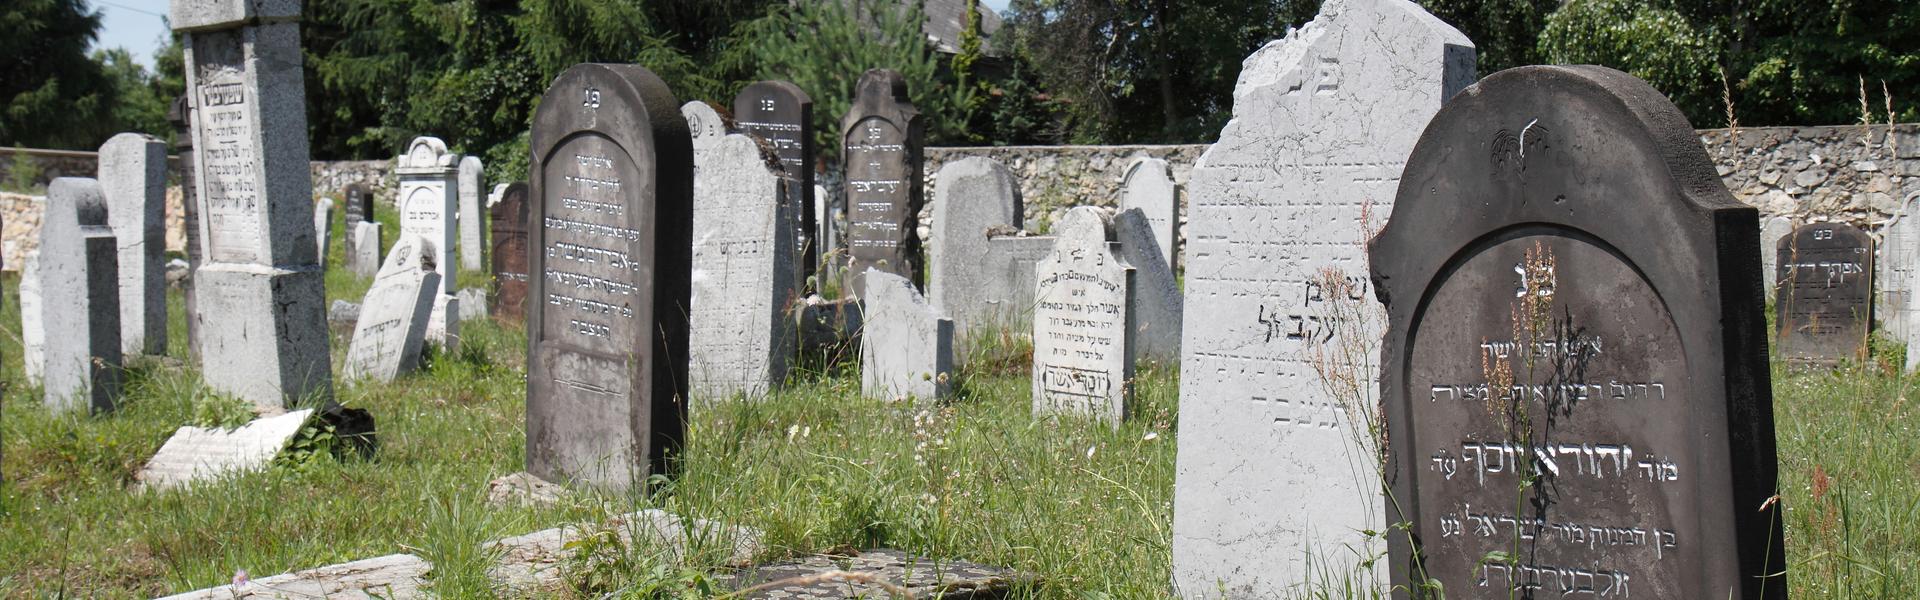 zdjęcie macew na cmentarzu żydowskim w Trzebini